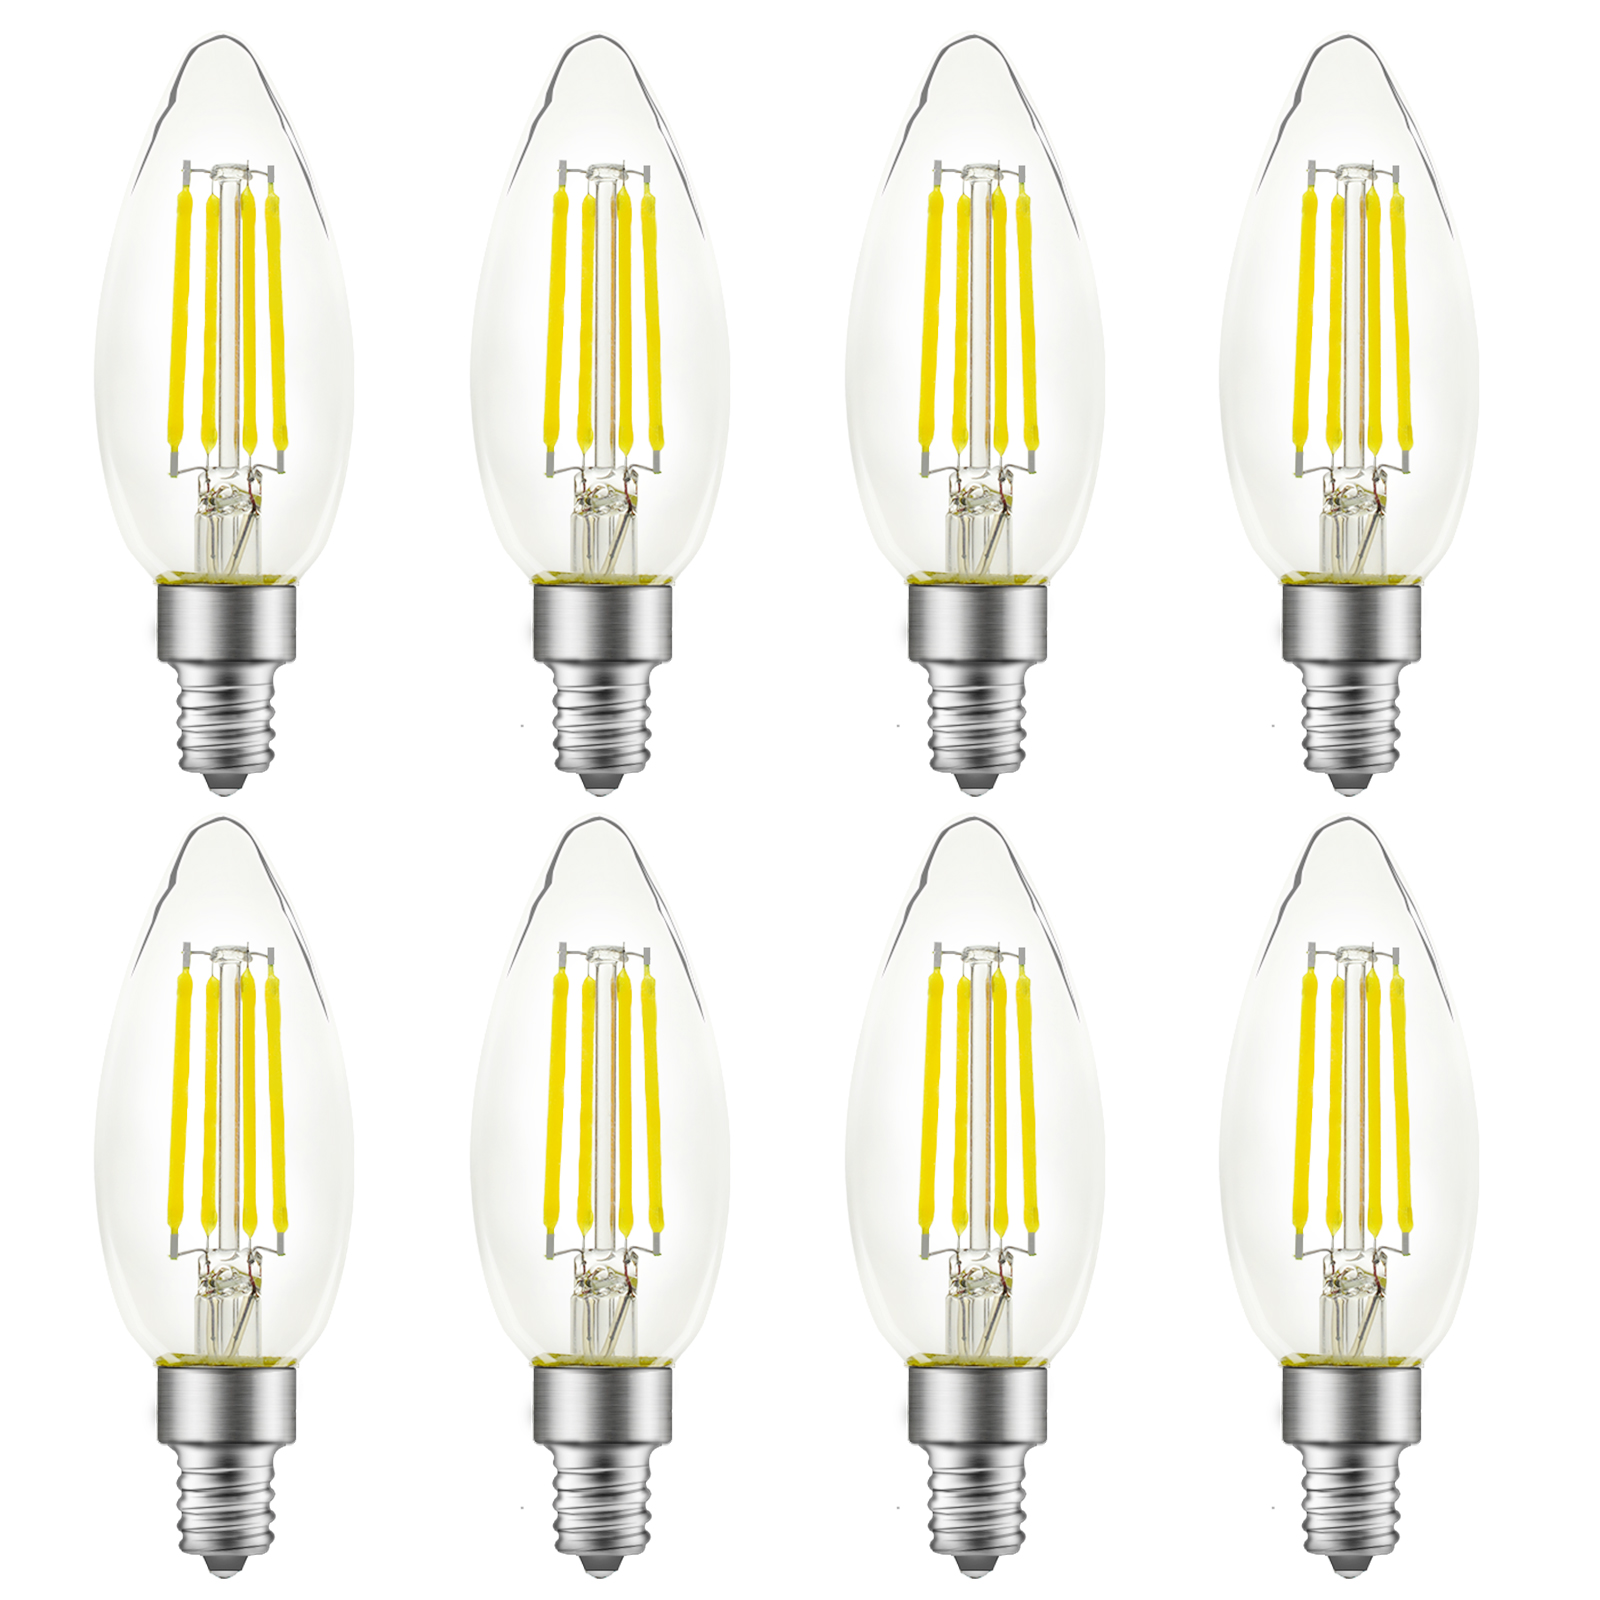 B10 LED Light Bulb, E12 Standard Base, 8 Pack